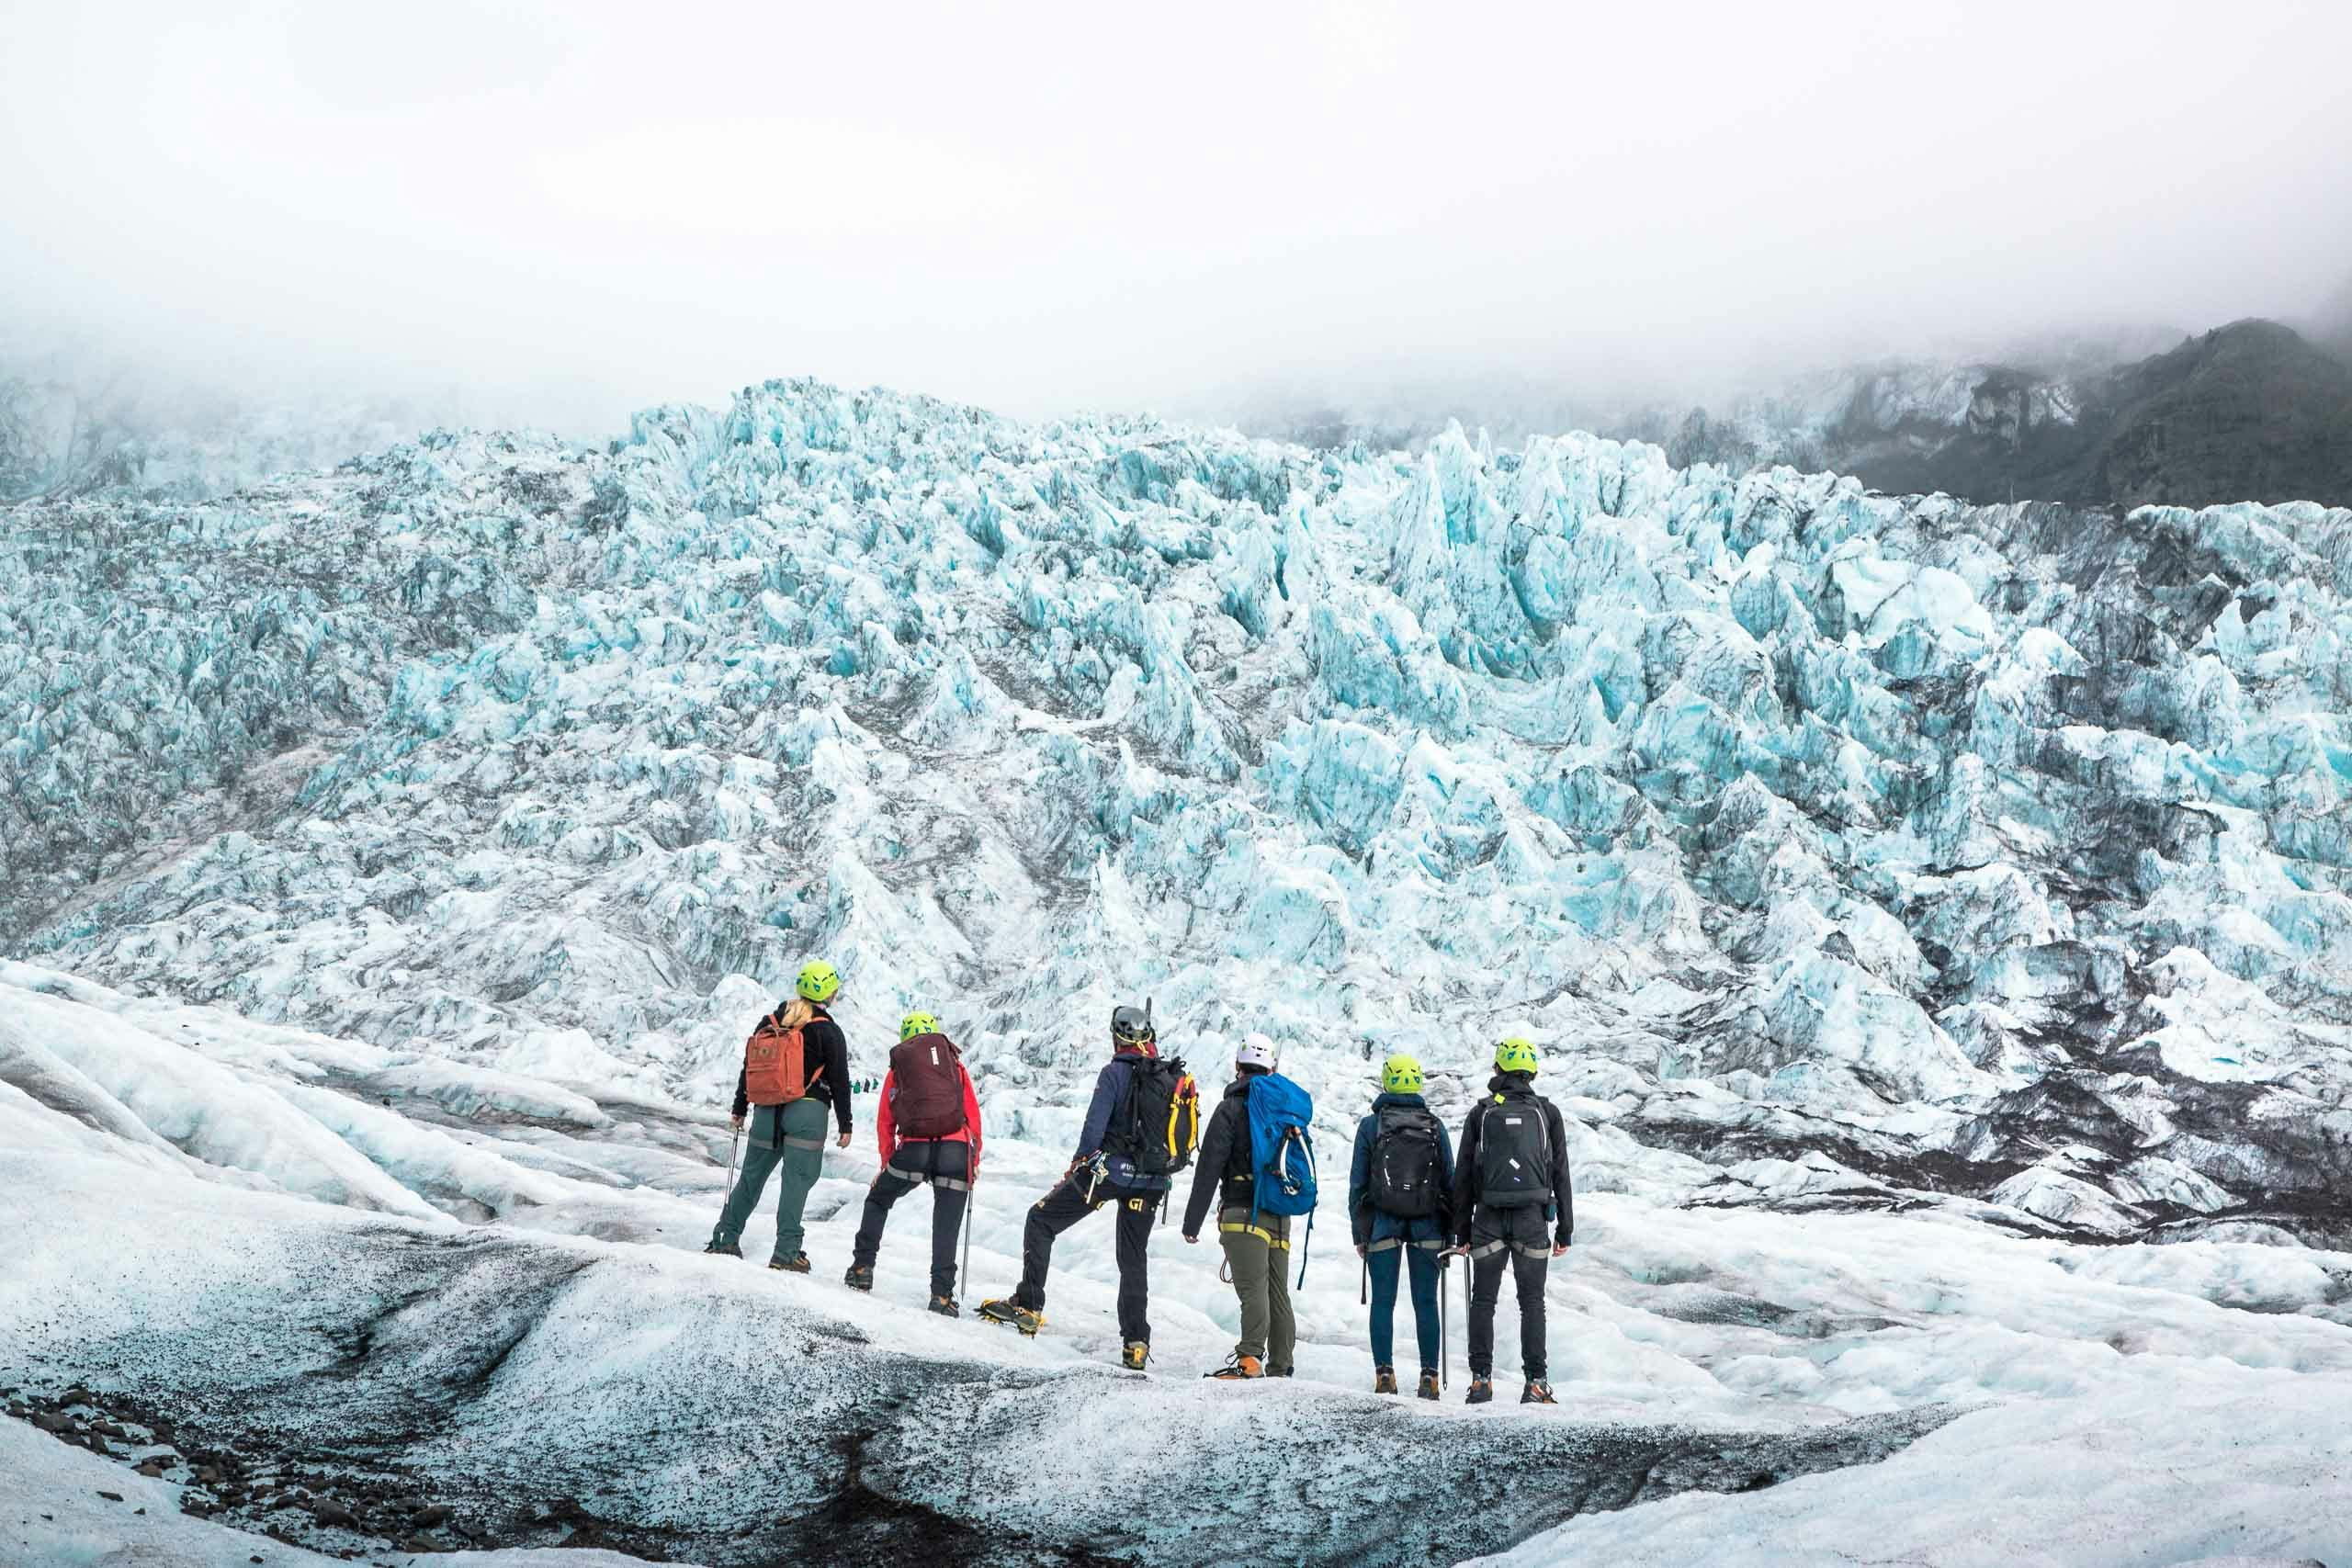 杰古沙龙冰河湖无疑是冰岛最值得游览的景区